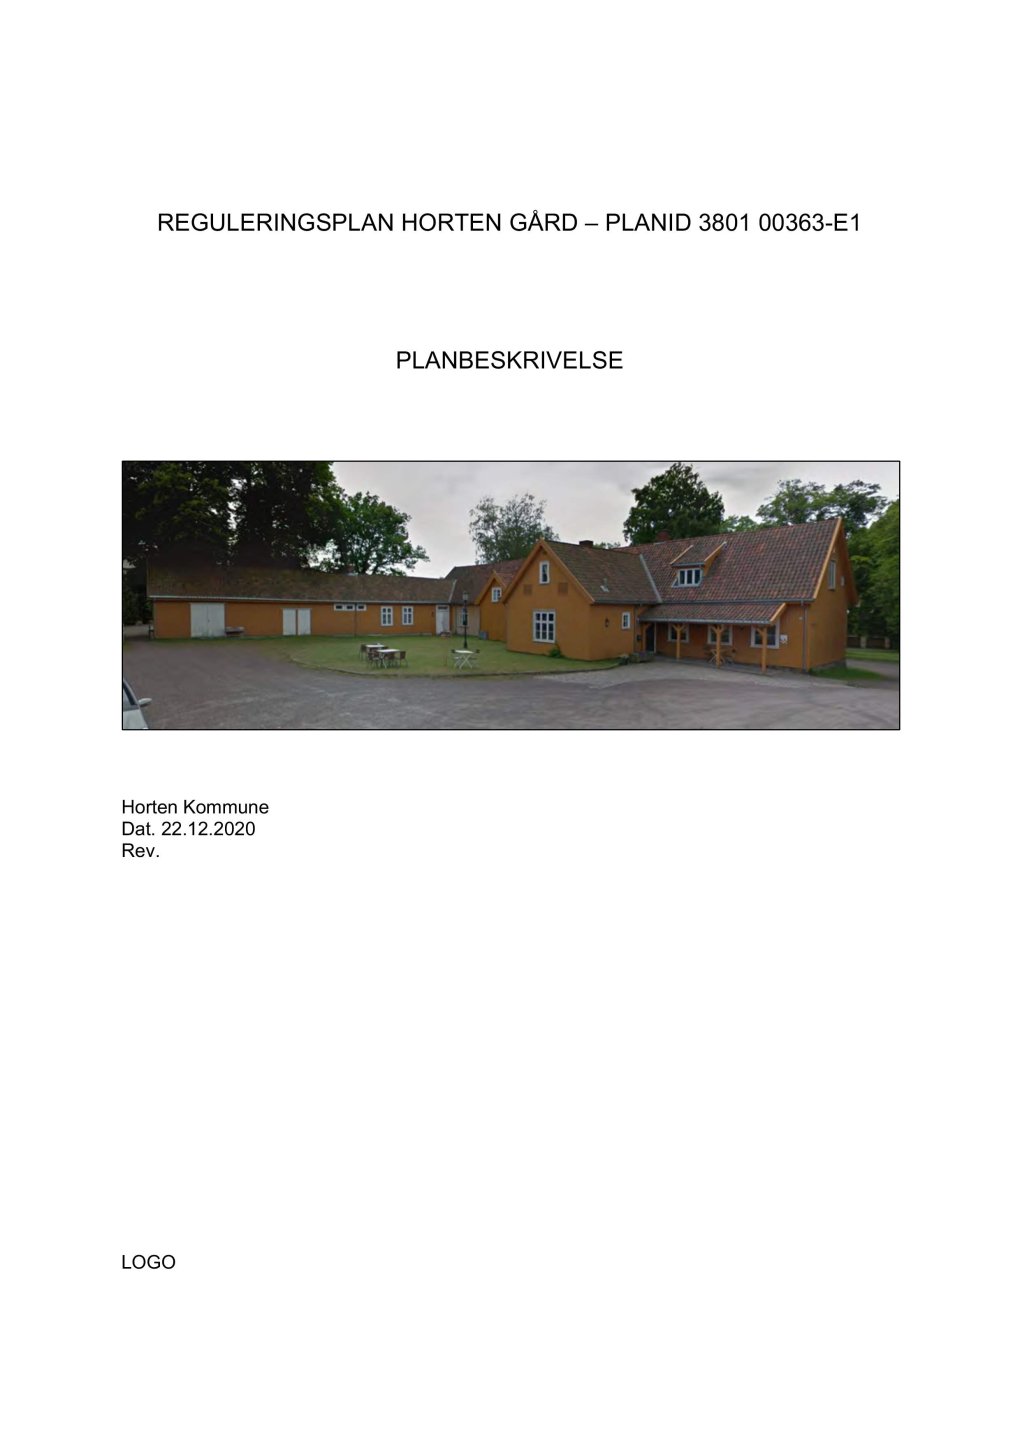 Reguleringsplan Horten Gård –Planid 3801 00363-E1 Planbeskrivelse